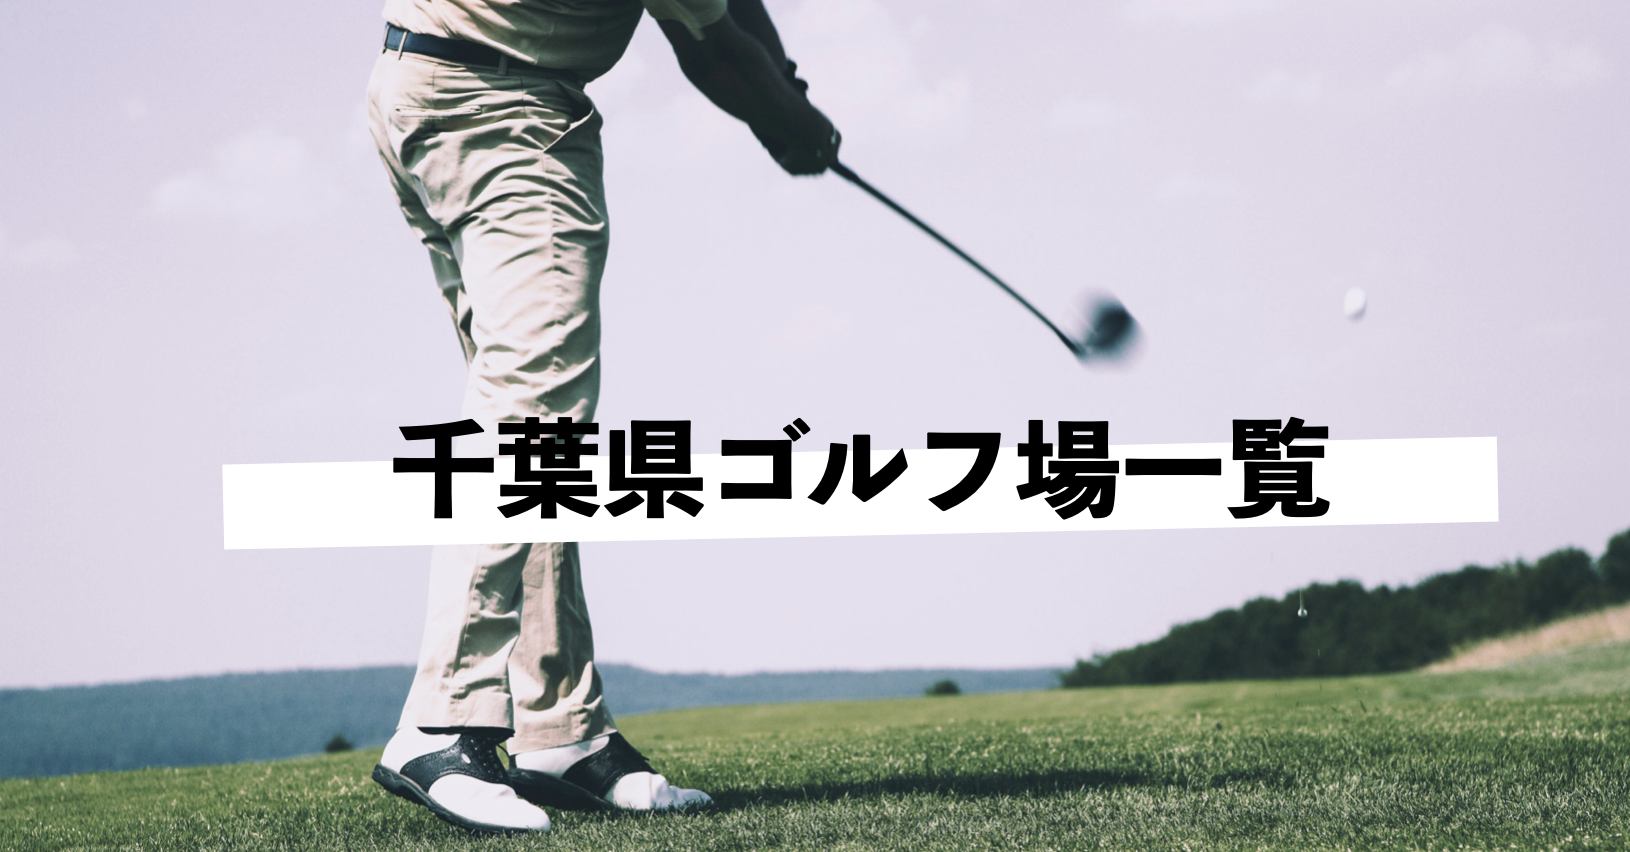 Golf course Chiba